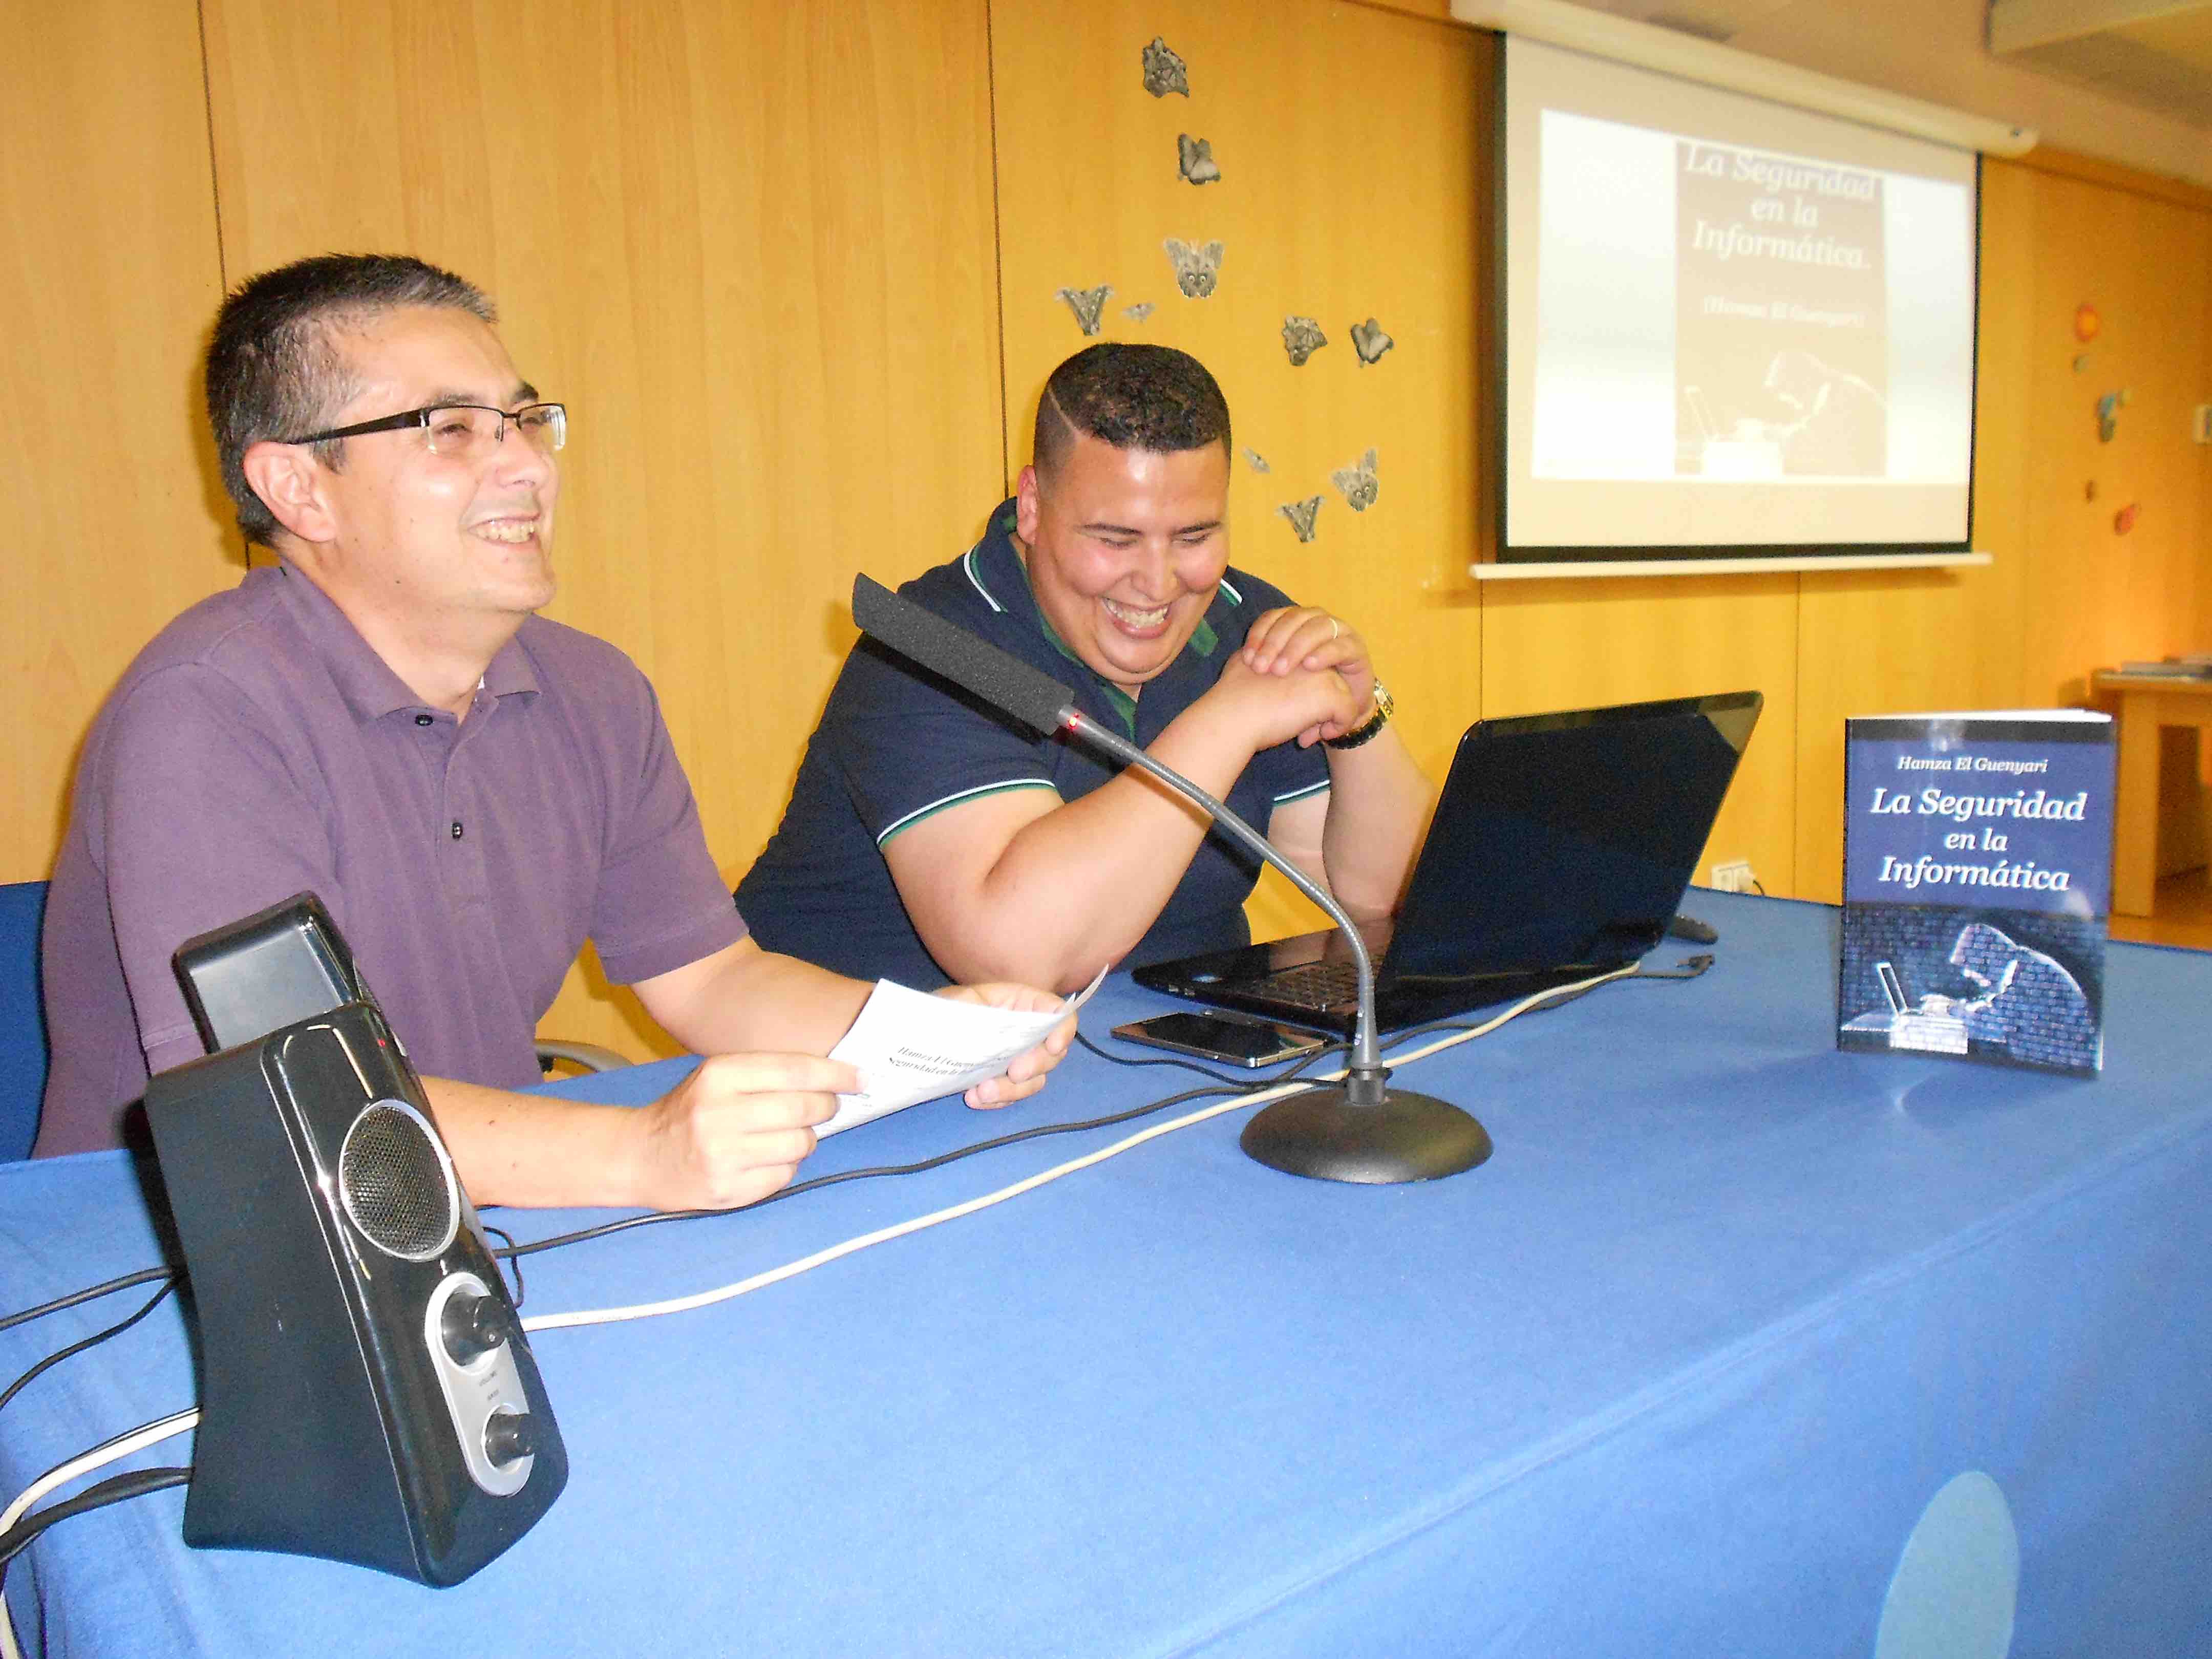 Presentación del libro "La Seguridad en la Informática" en el salón de actos del Museo de Ciencias y del Agua de la Región de Murcia